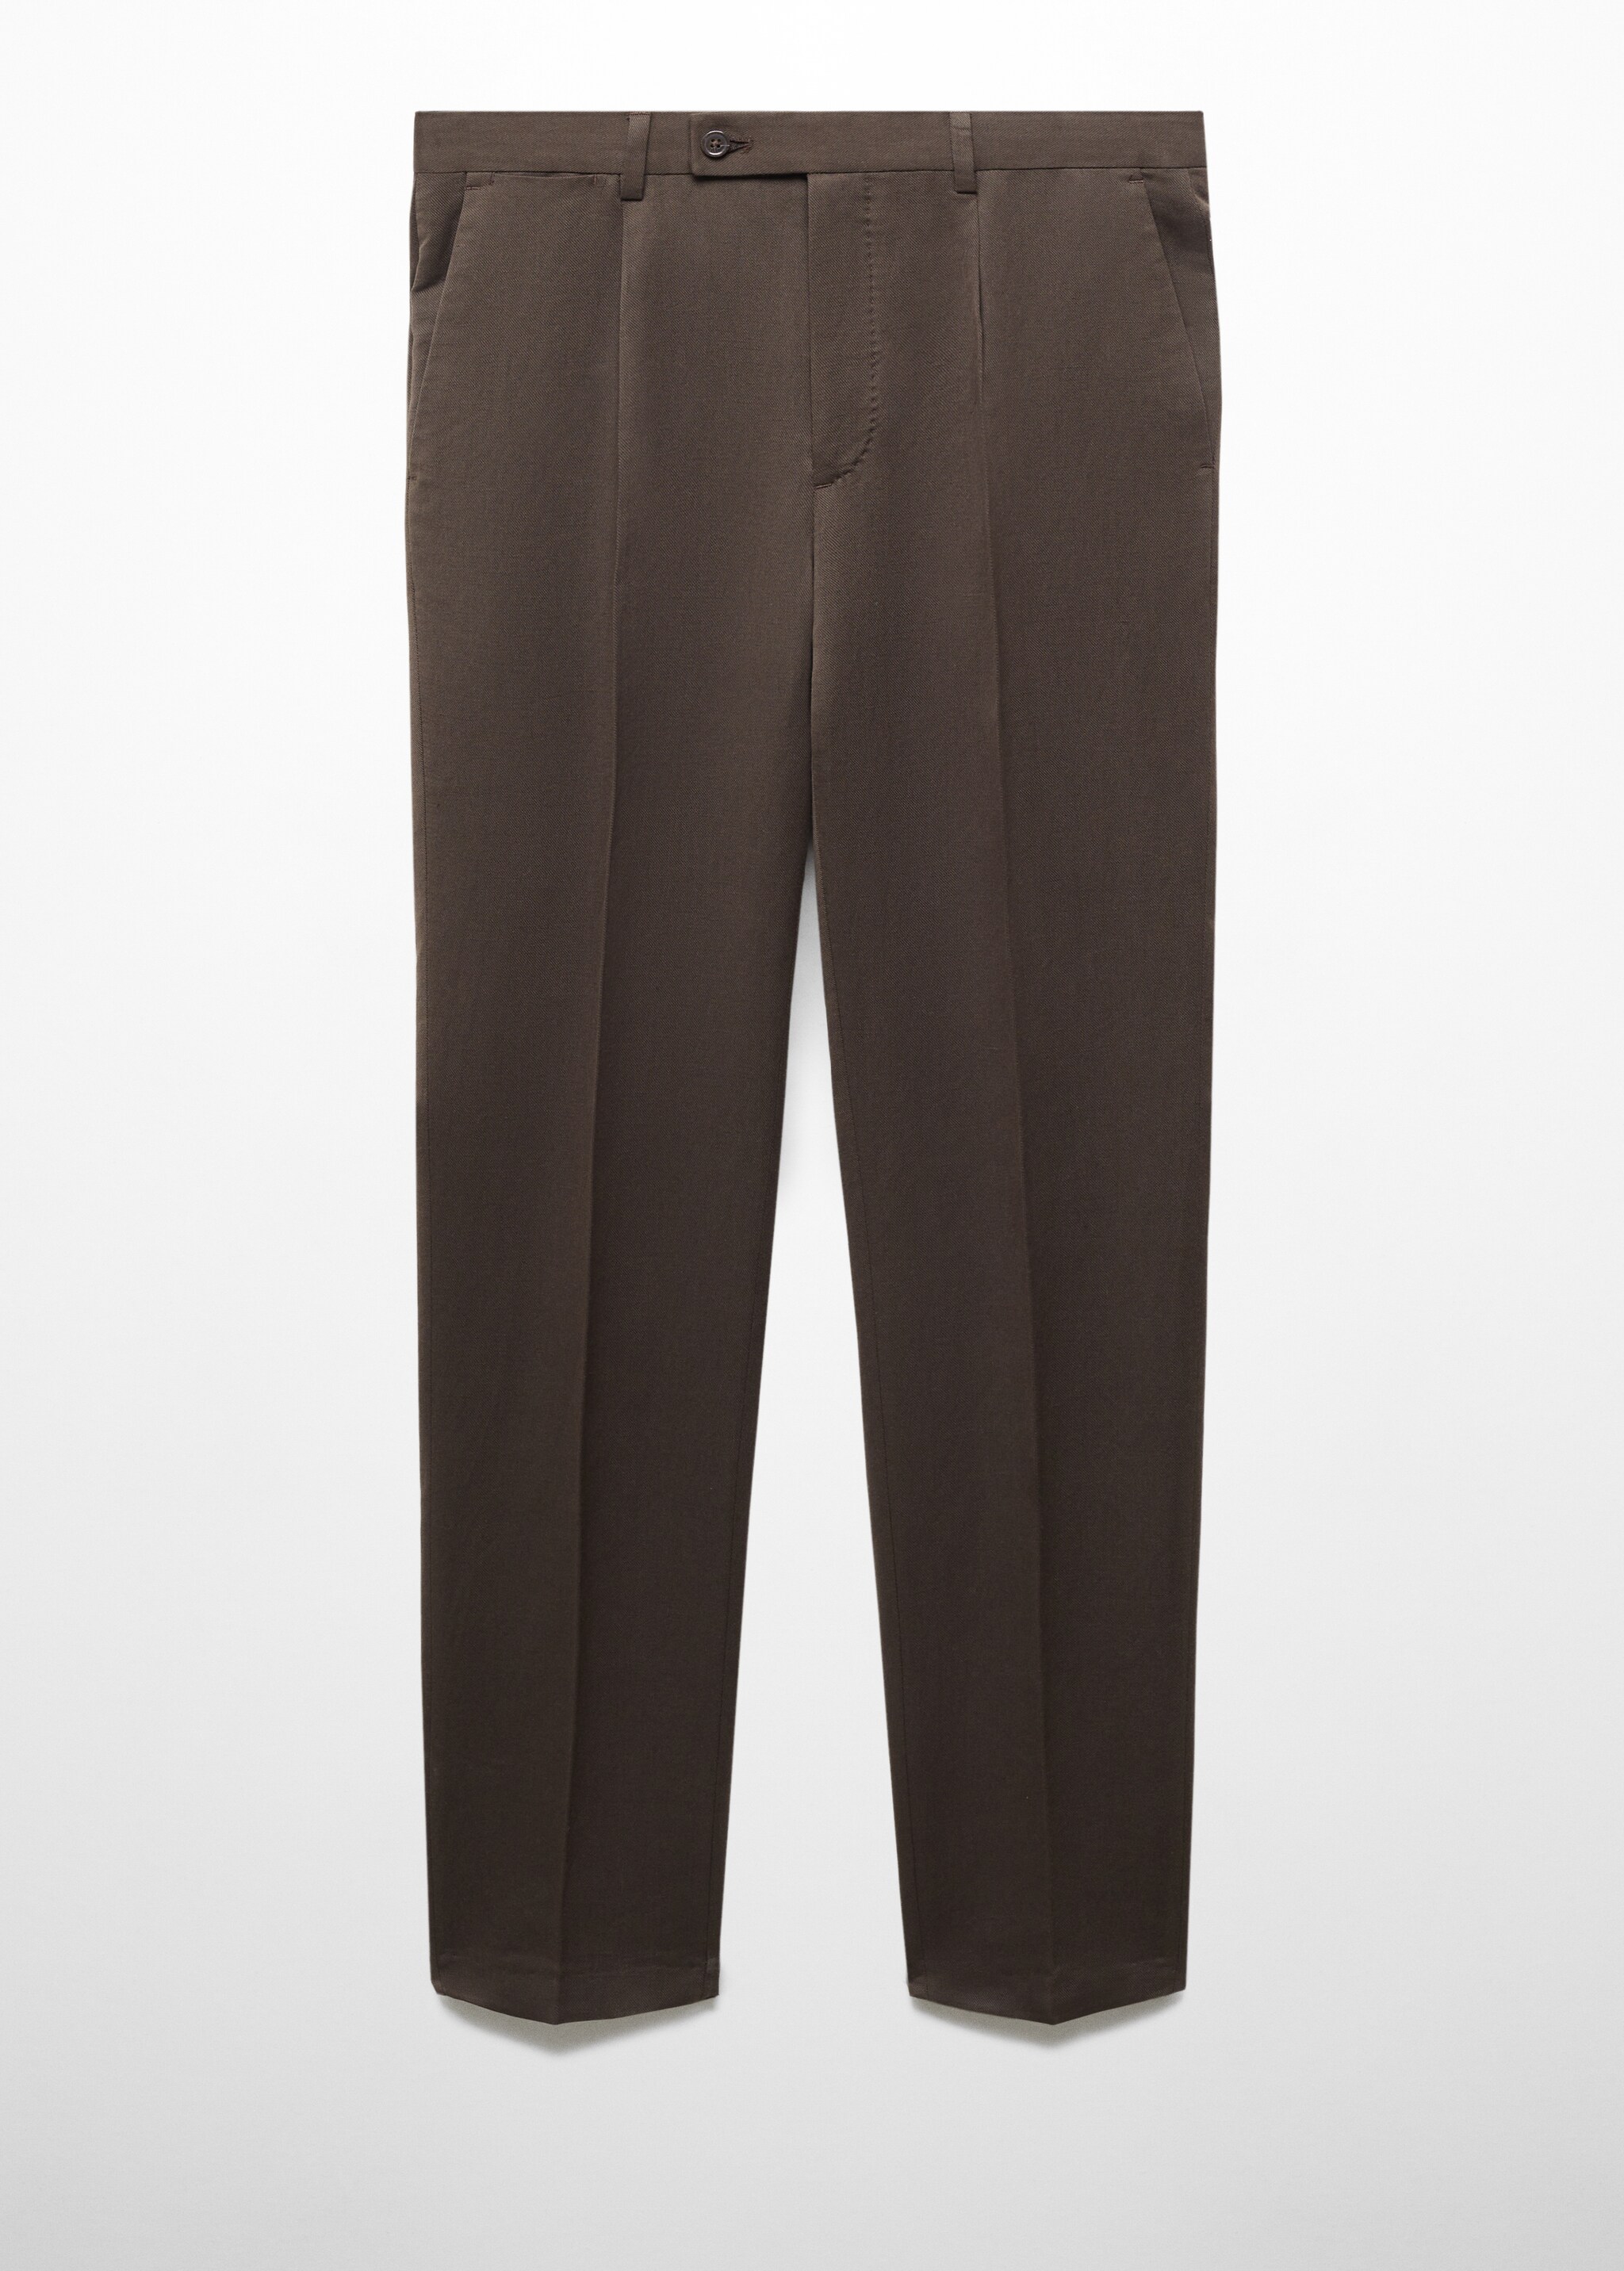 Pantaloni completo slim-fit cotone e lino - Articolo senza modello